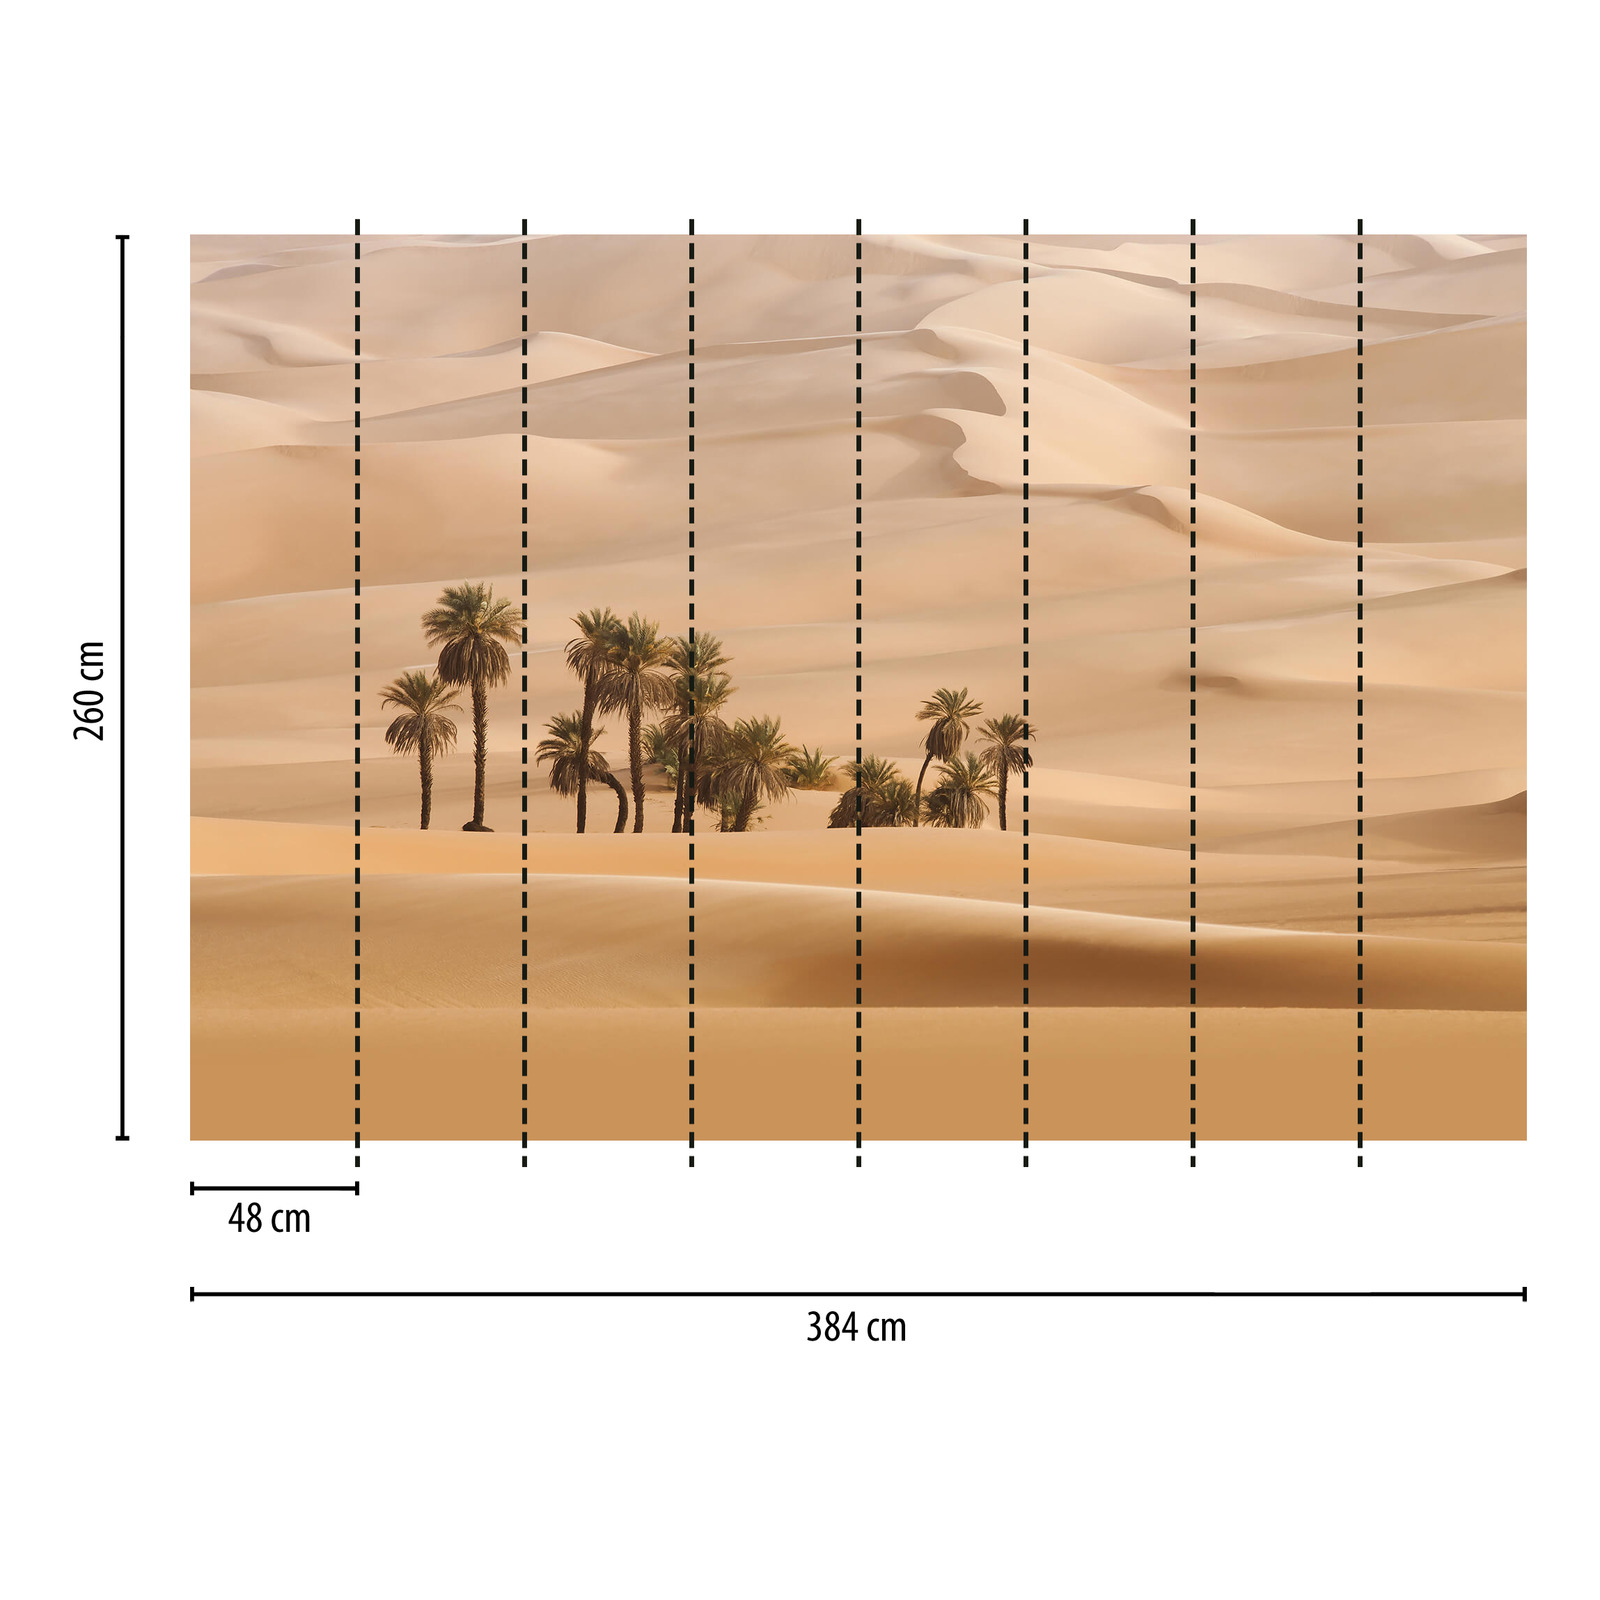             Fototapete Wüste mit Palmen – Beige
        